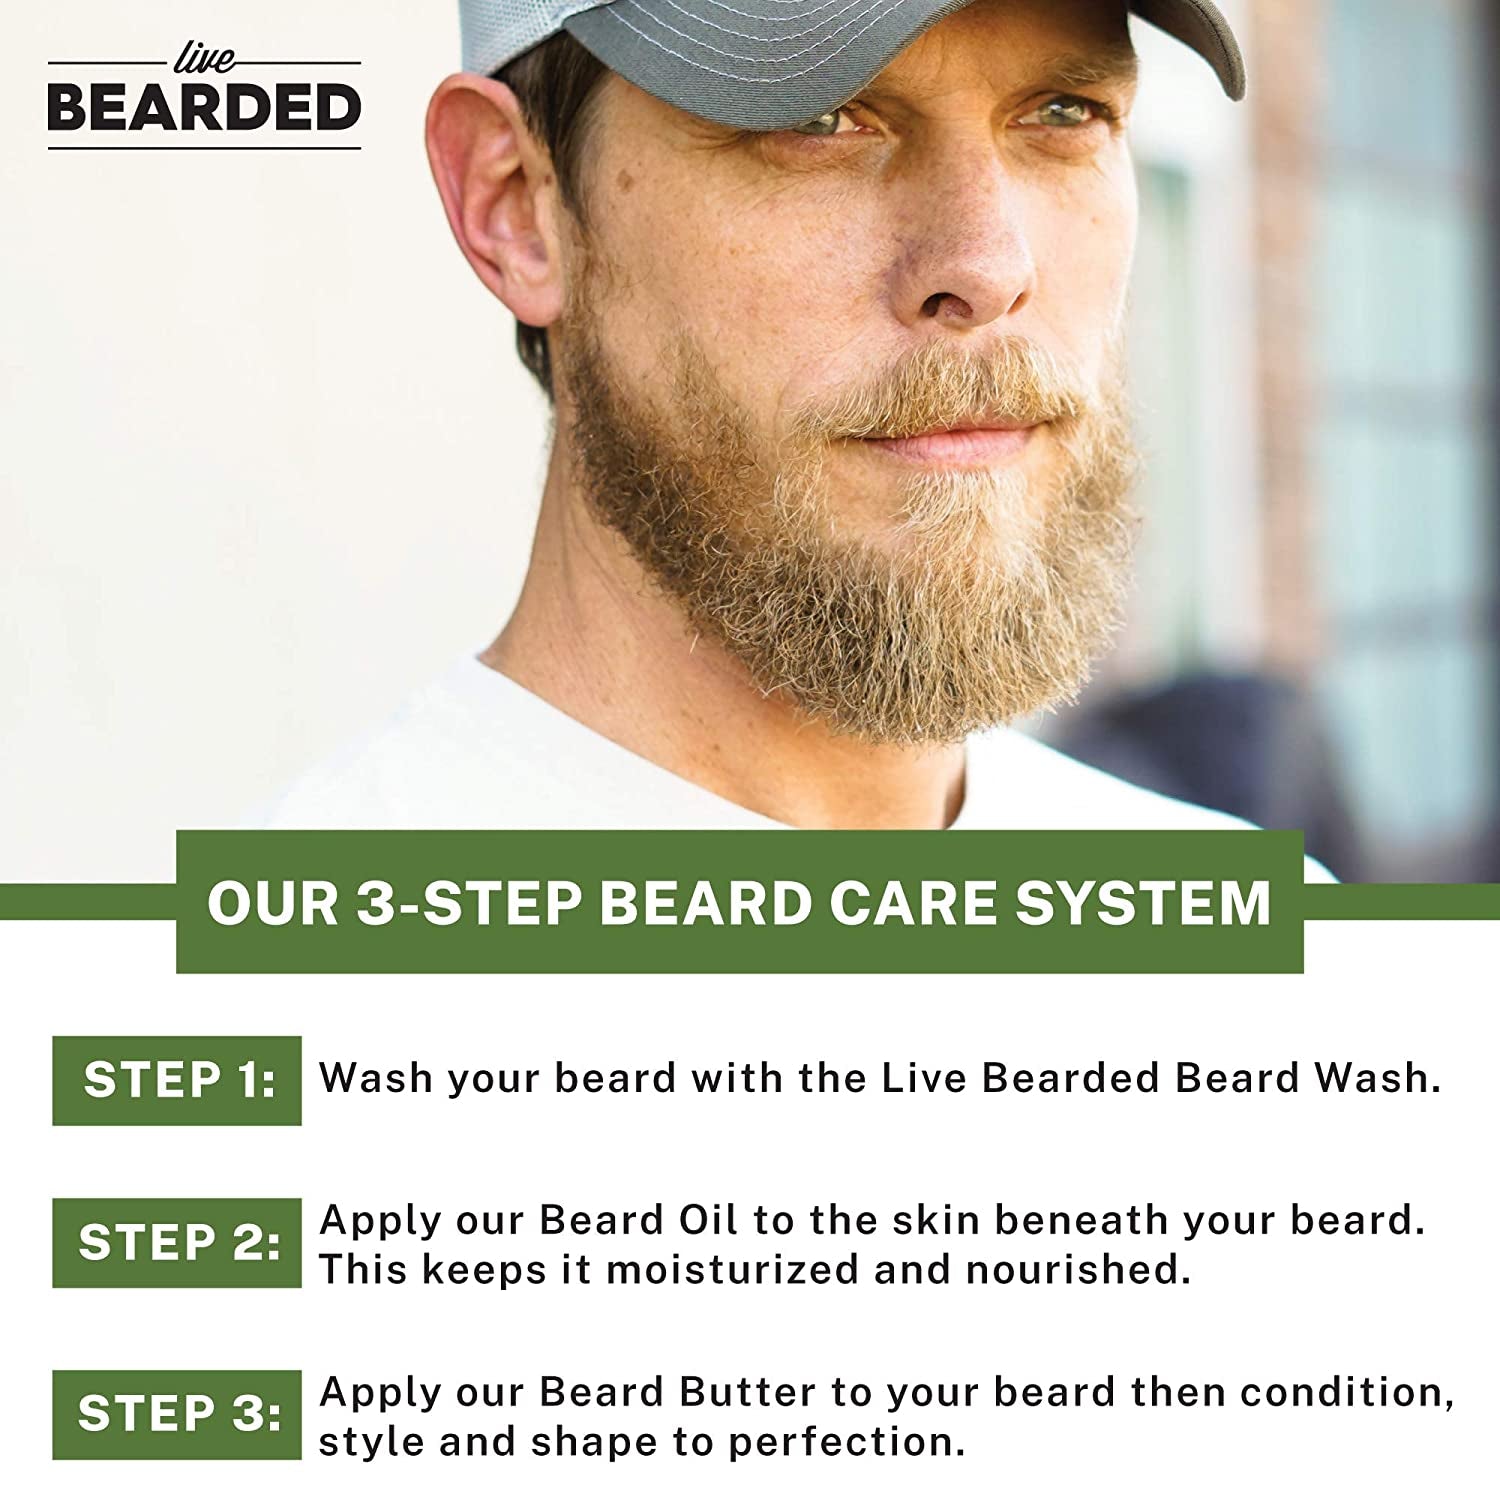 Beard Butter - Everyday-Sales.com